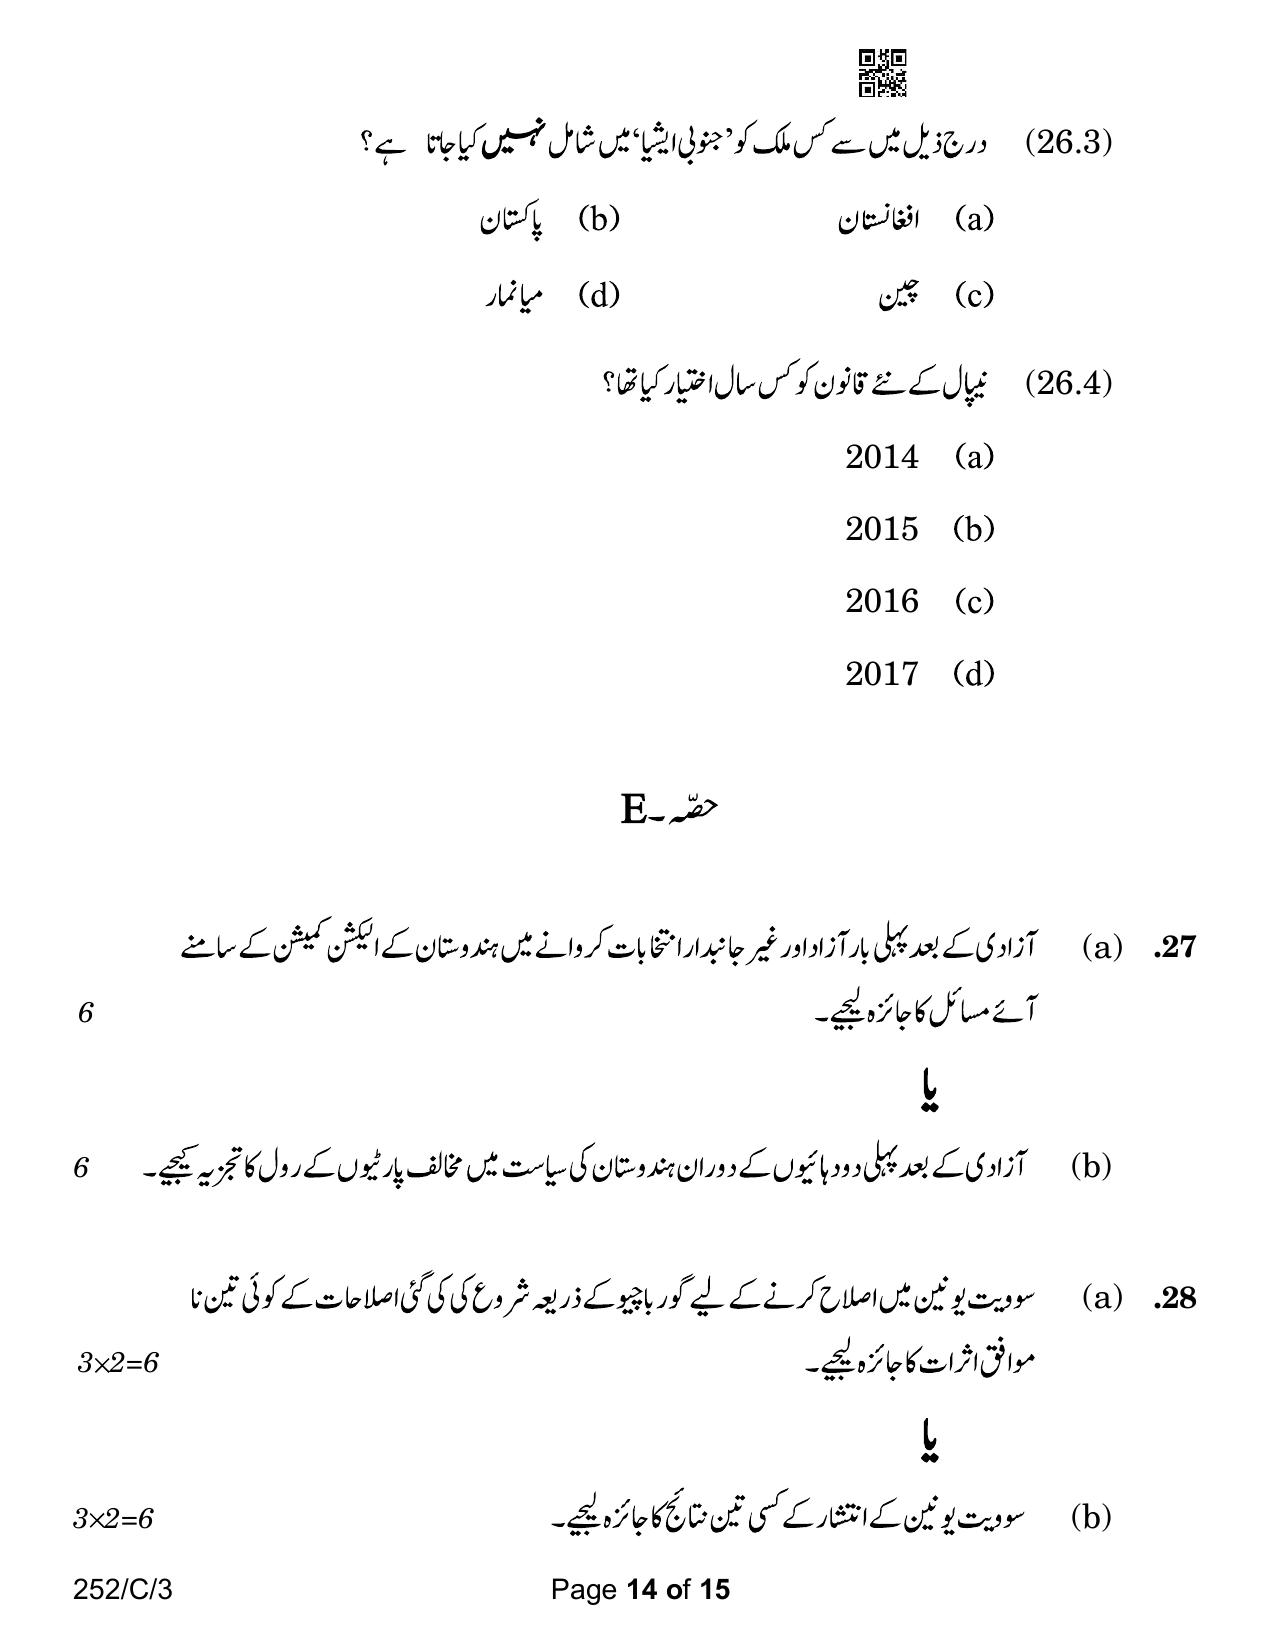 CBSE Class 12 252-3 Political Science Urdu Version 2023 (Compartment) Question Paper - Page 14